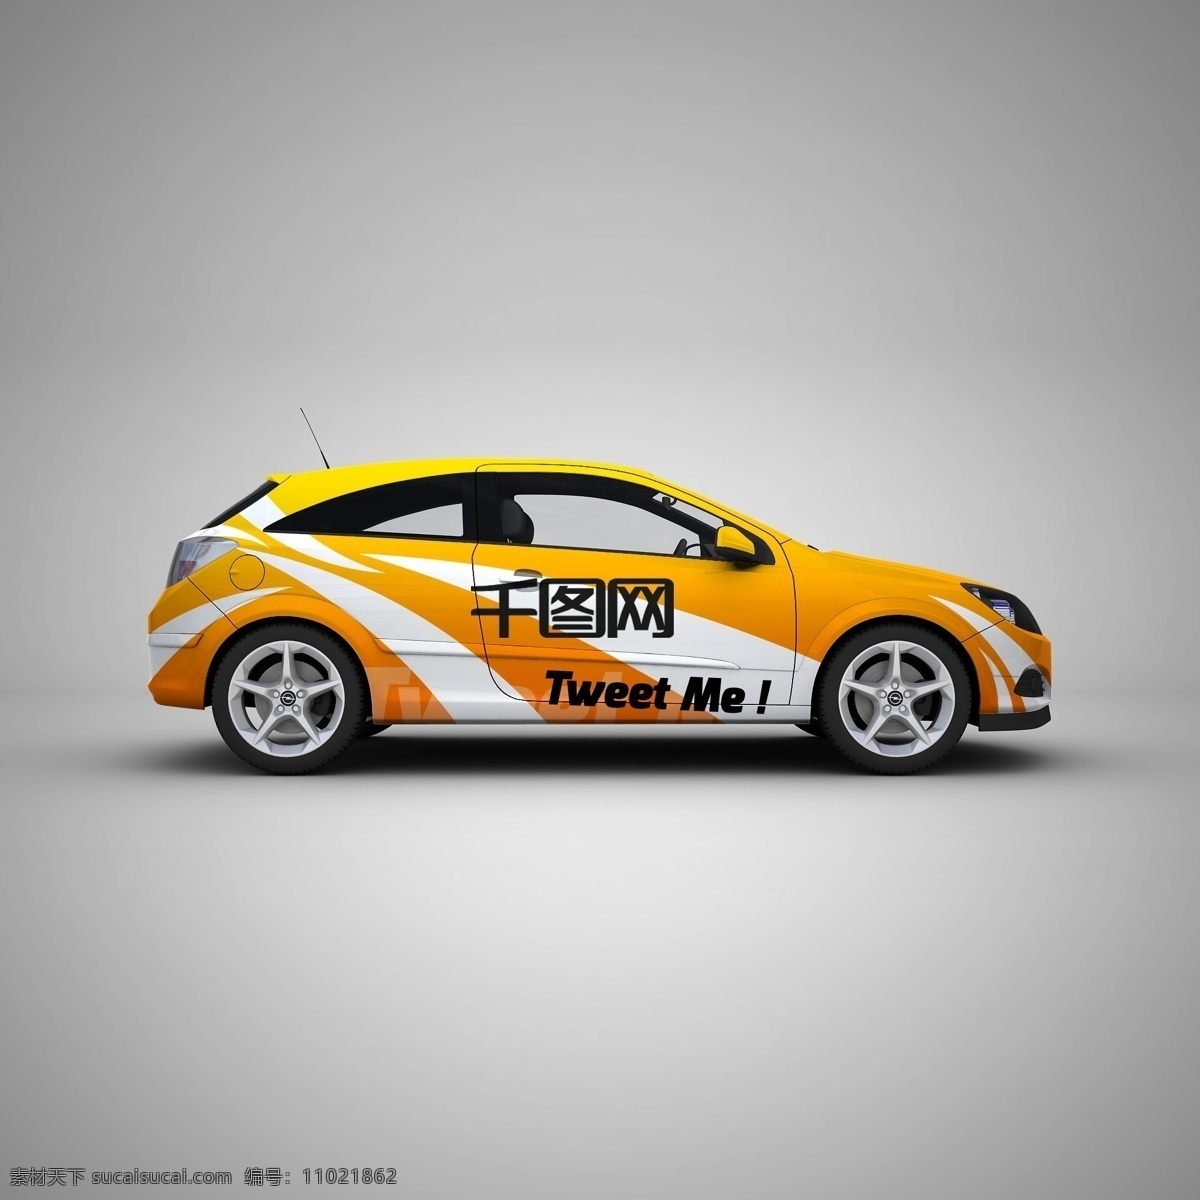 橙色 车体 广告 智能 贴图 场景 轿车 样机 灰色